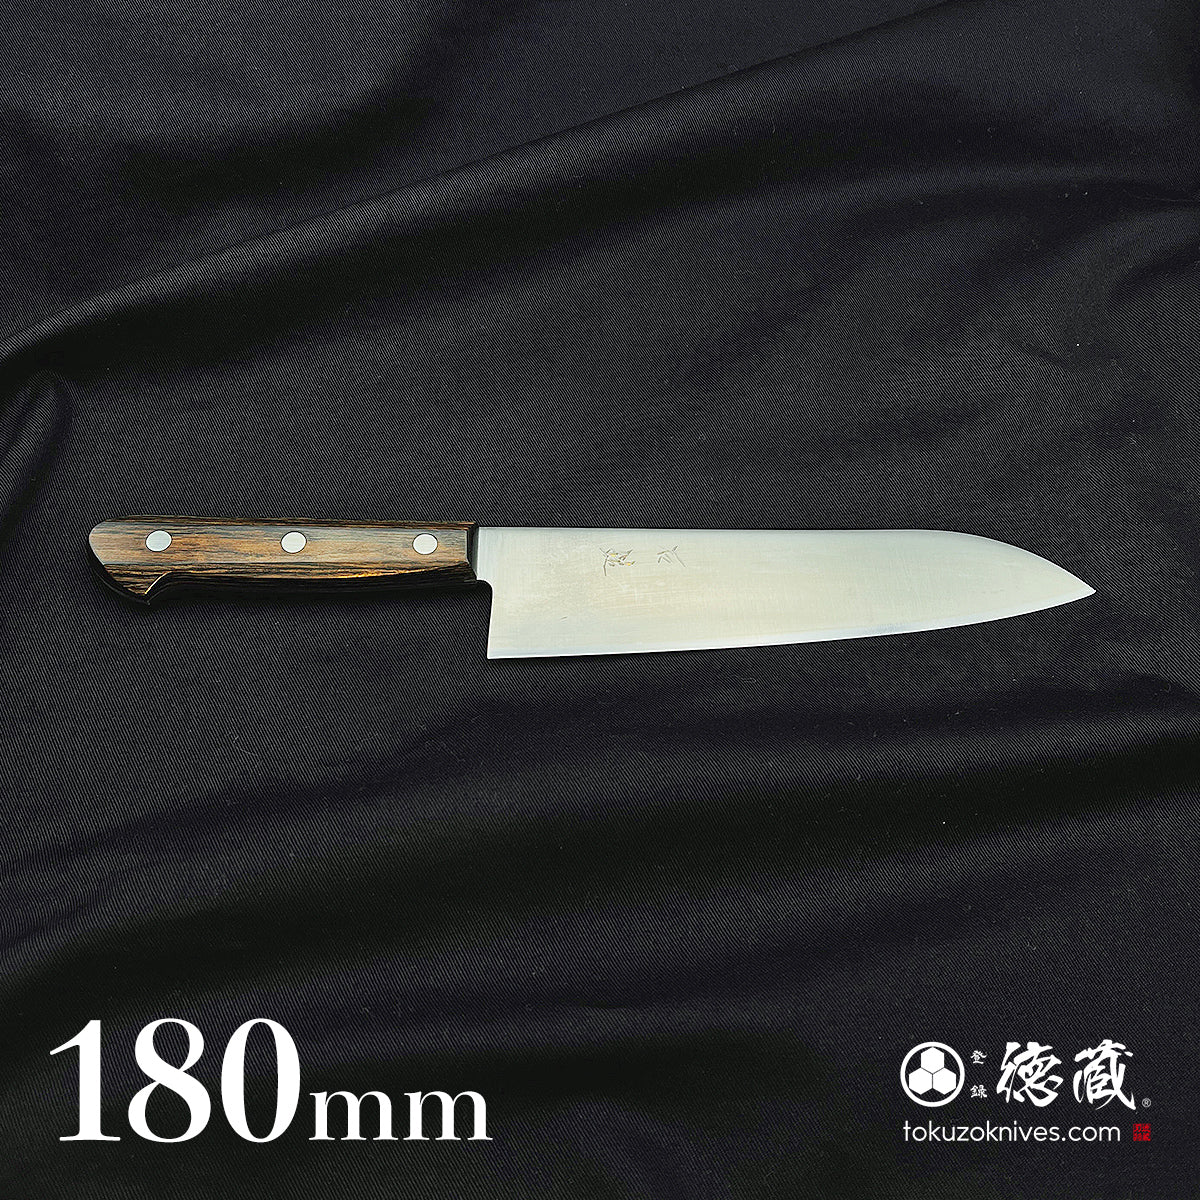 SLD Santoku knife, dark brown handle